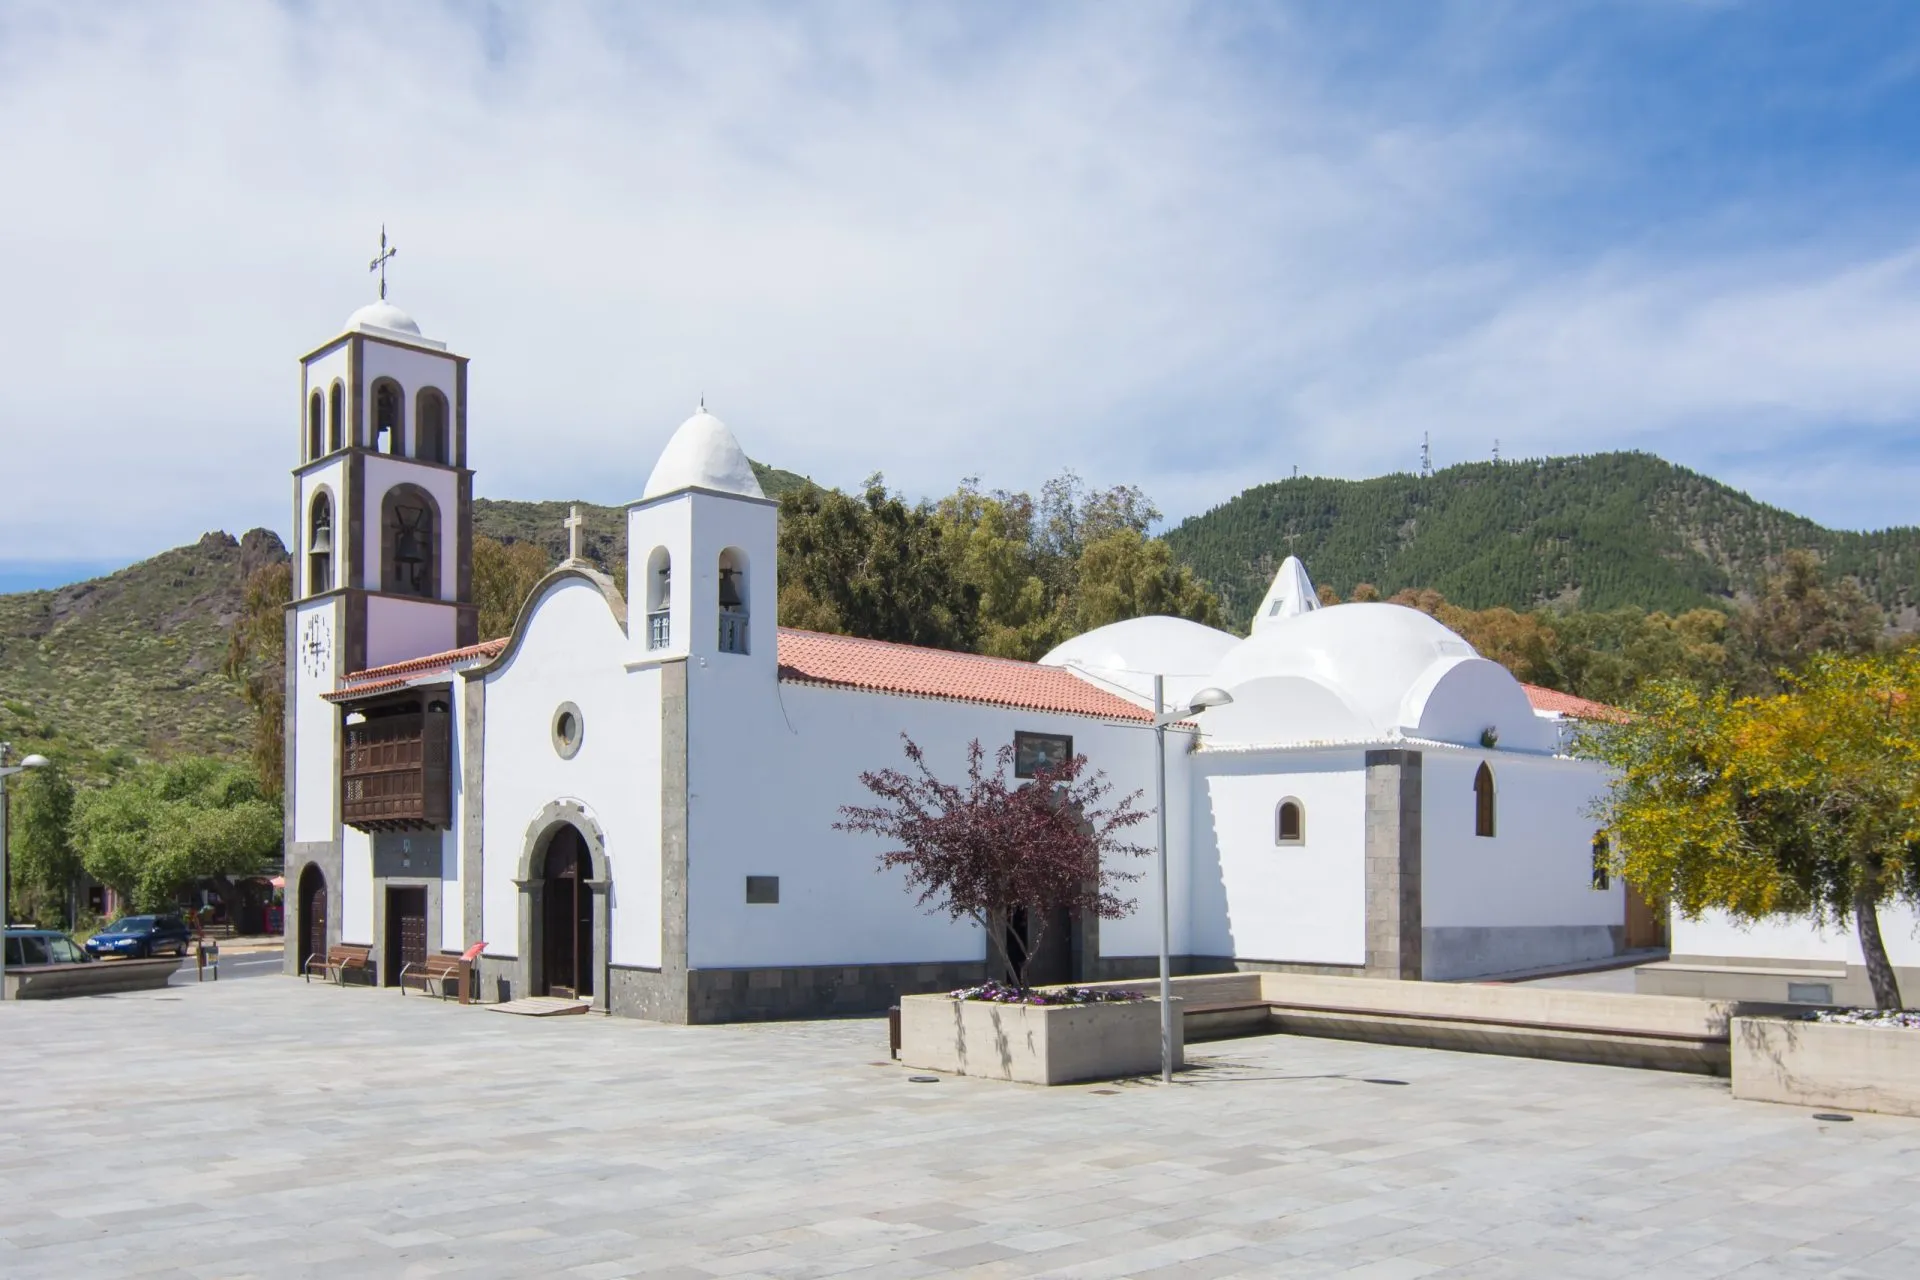 Iglesia (church) de San Fernando Rey in Santiago del Teide, Tenerife island, Canary island, Spain